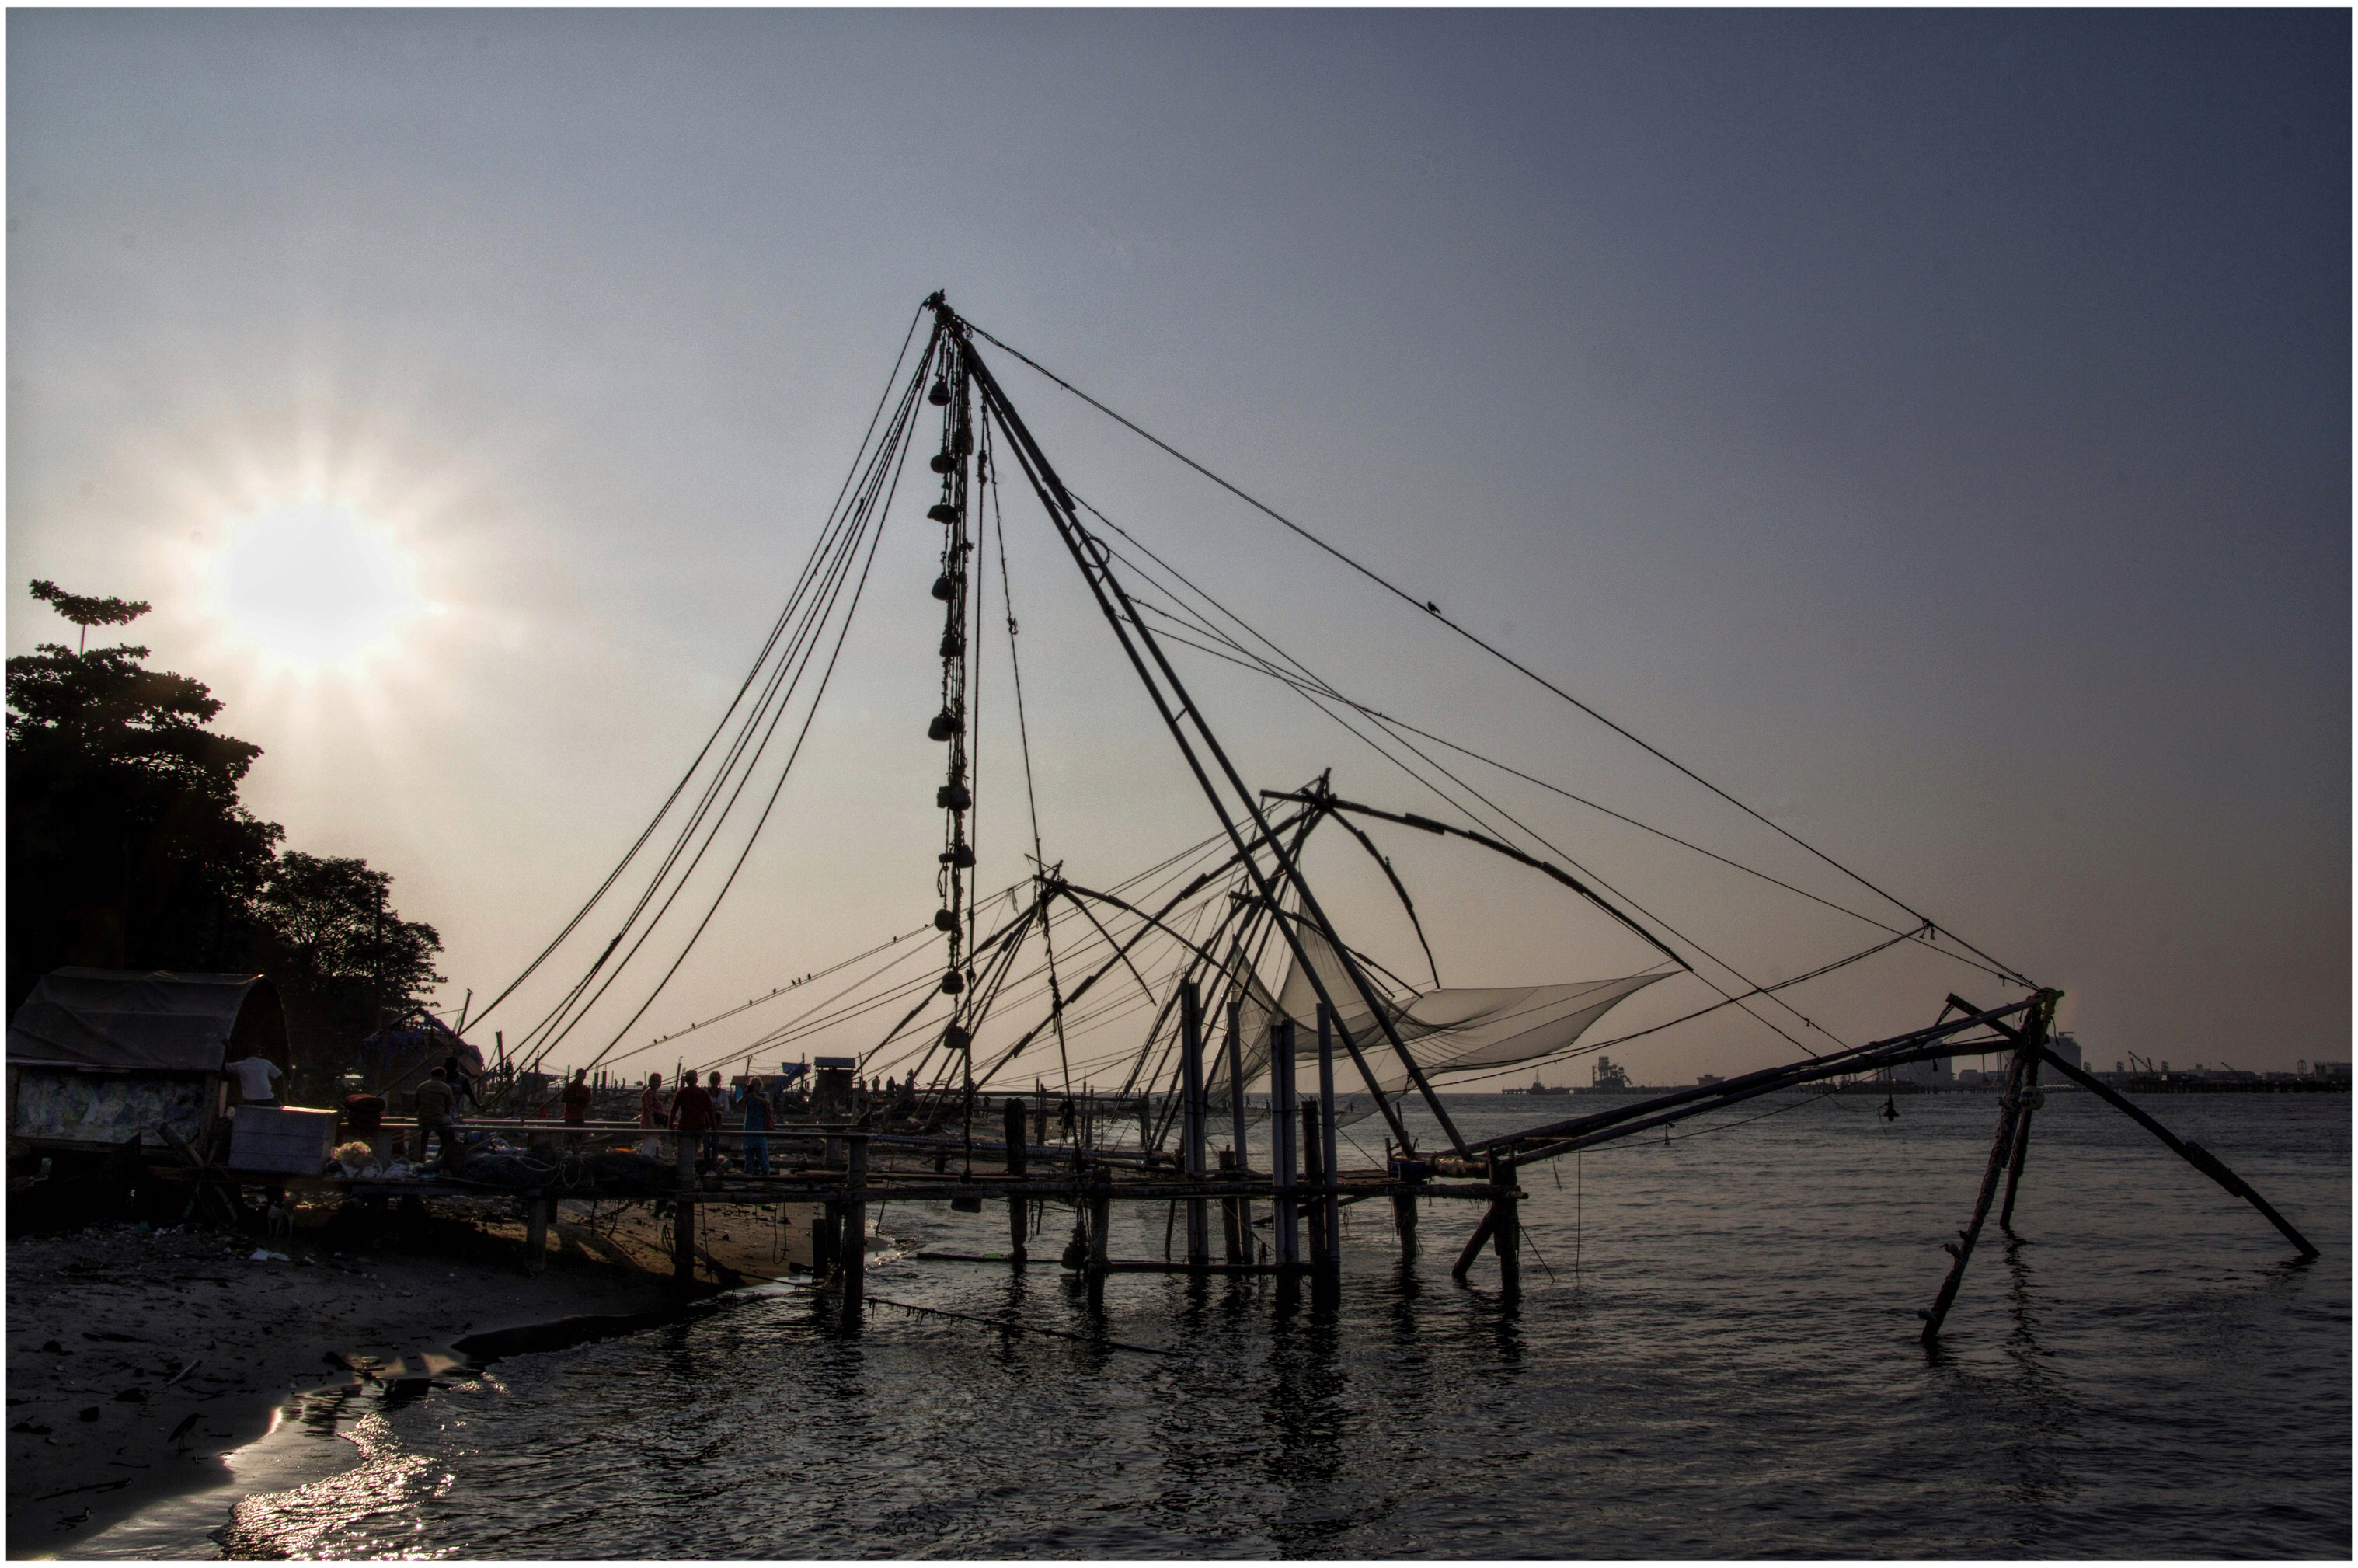 Chinese Fishing Nets, Cochin, India